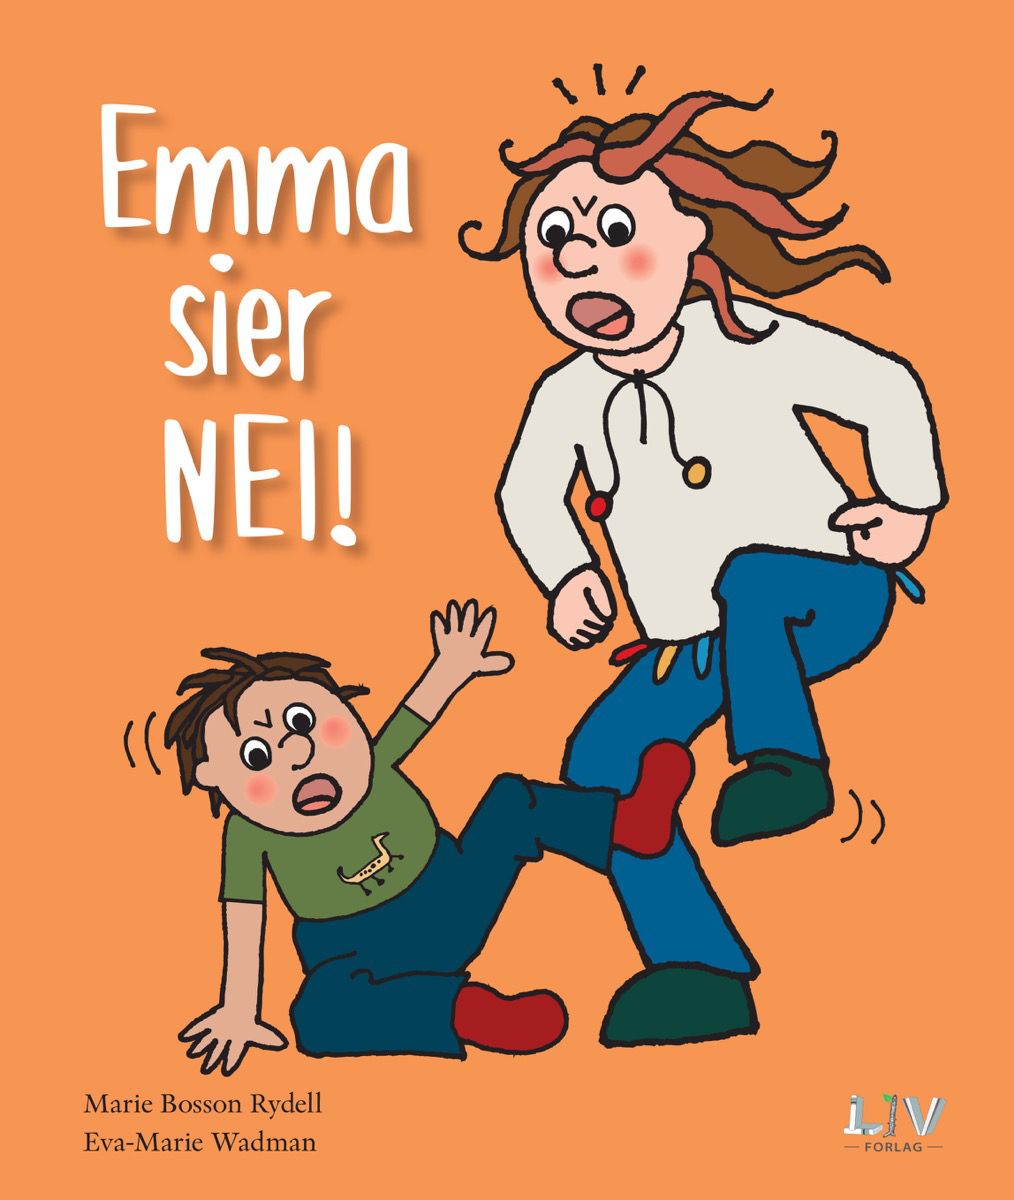 "Emma sier nei!": En viktig skjønnlitterær bok om barns rettigheter